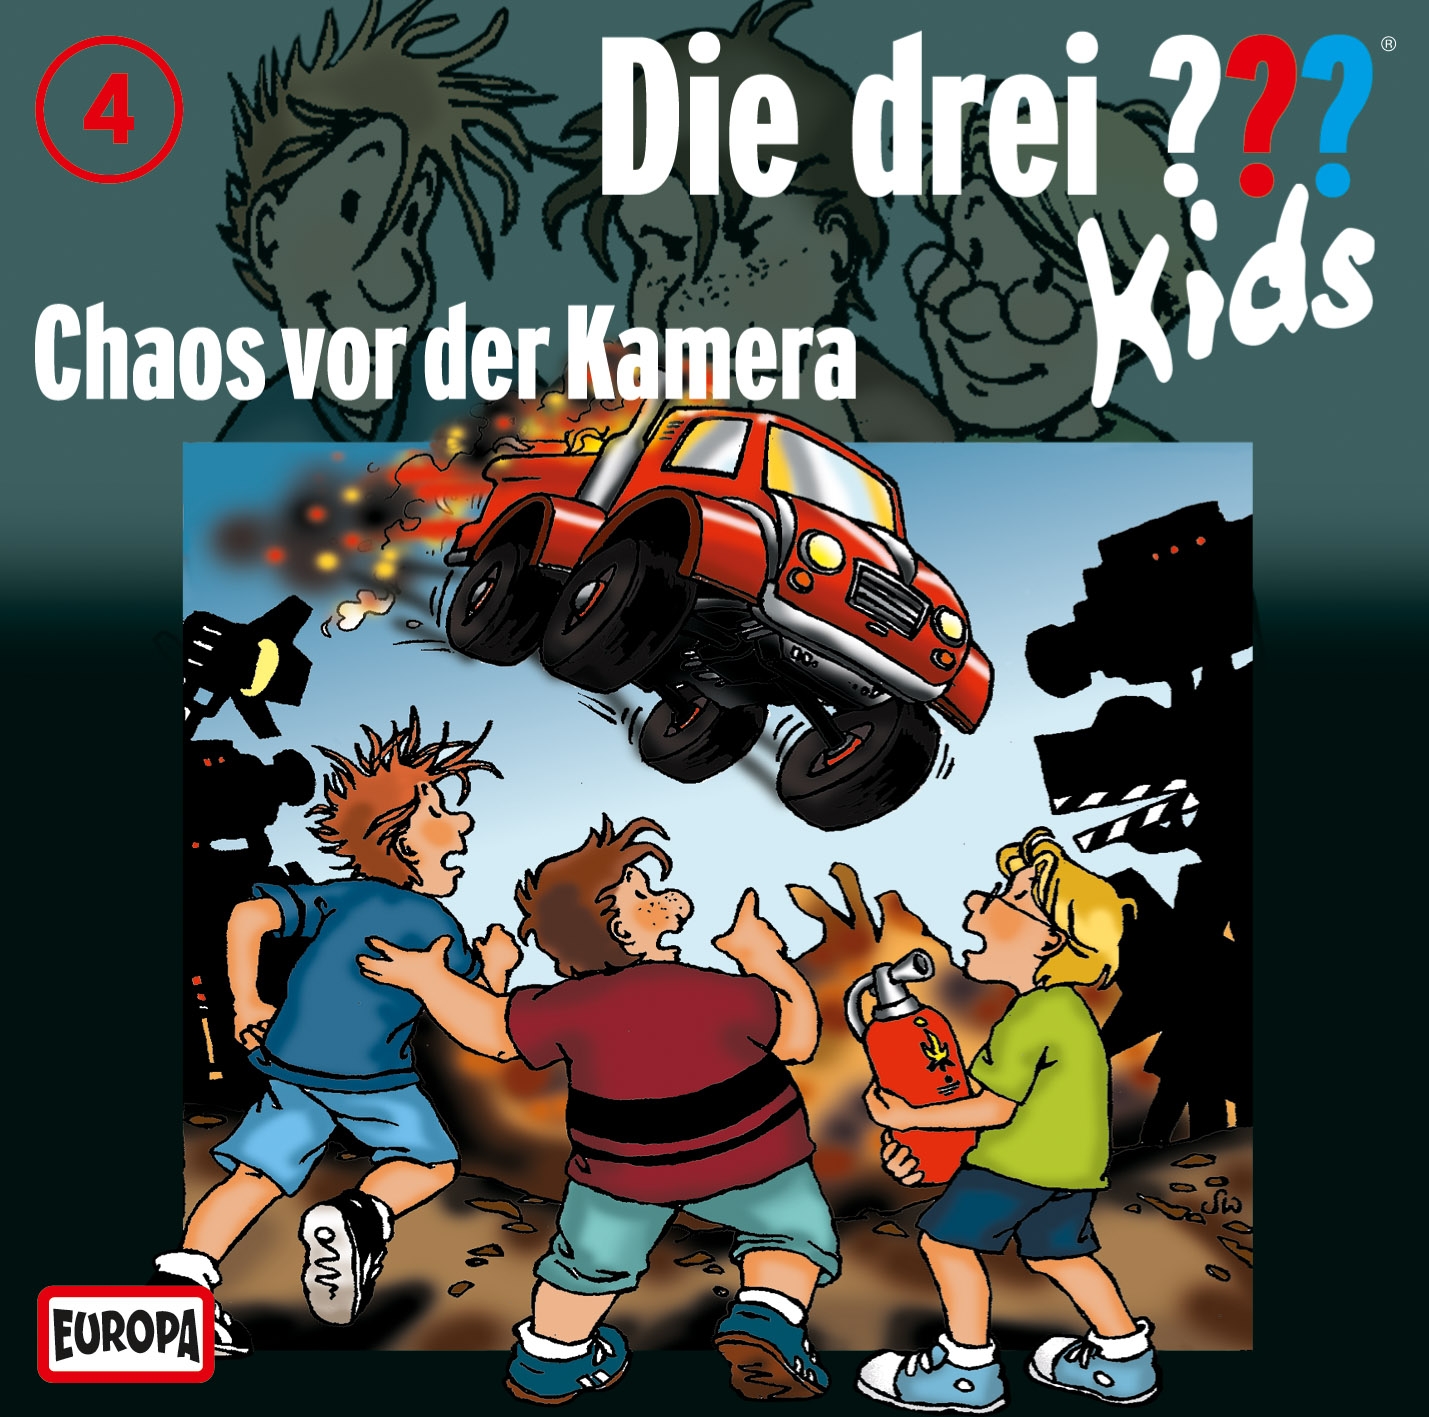 Die Drei ??? (Fragezeichen) Kids, Hörspiel-Folge 4: Chaos vor der Kamera